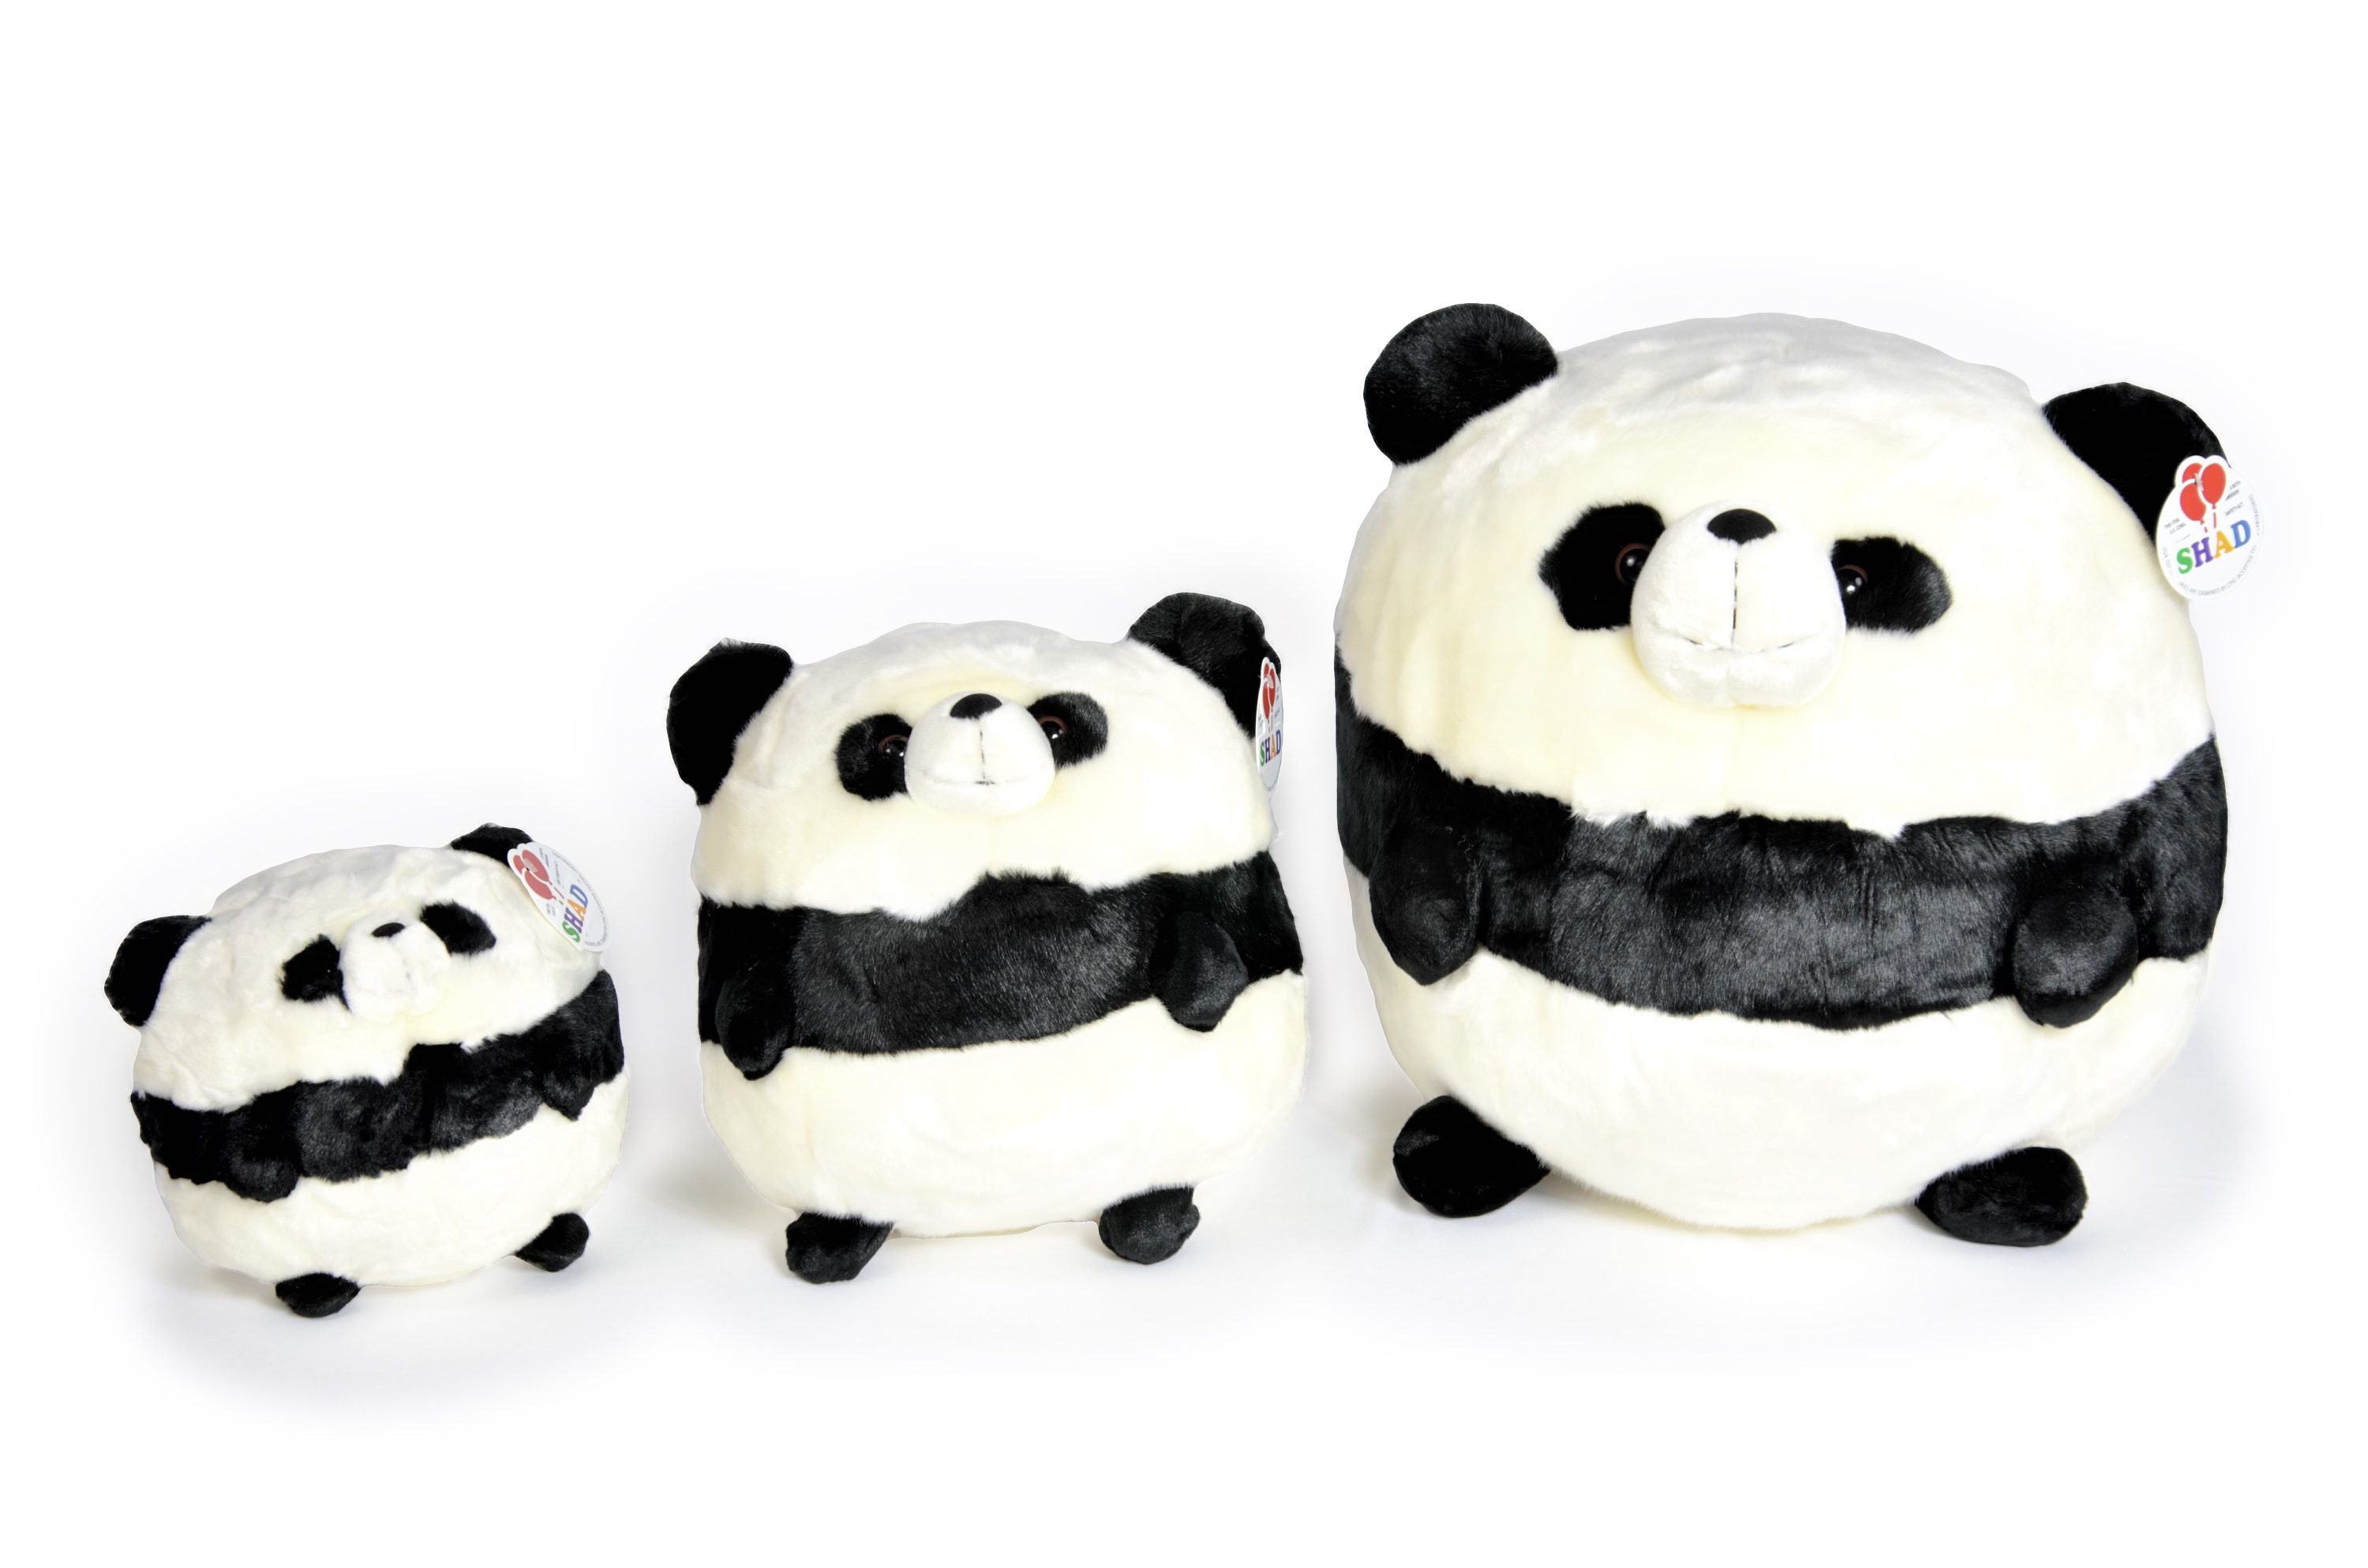 Babyparty gefülltes Plüschtier / Panda Bär Stofftier / süßes weiches  Plüschtier für Baby / Plüsch Panda Geschenk für Kind / sicheres  chemikalienfreies Plüschtier - .de